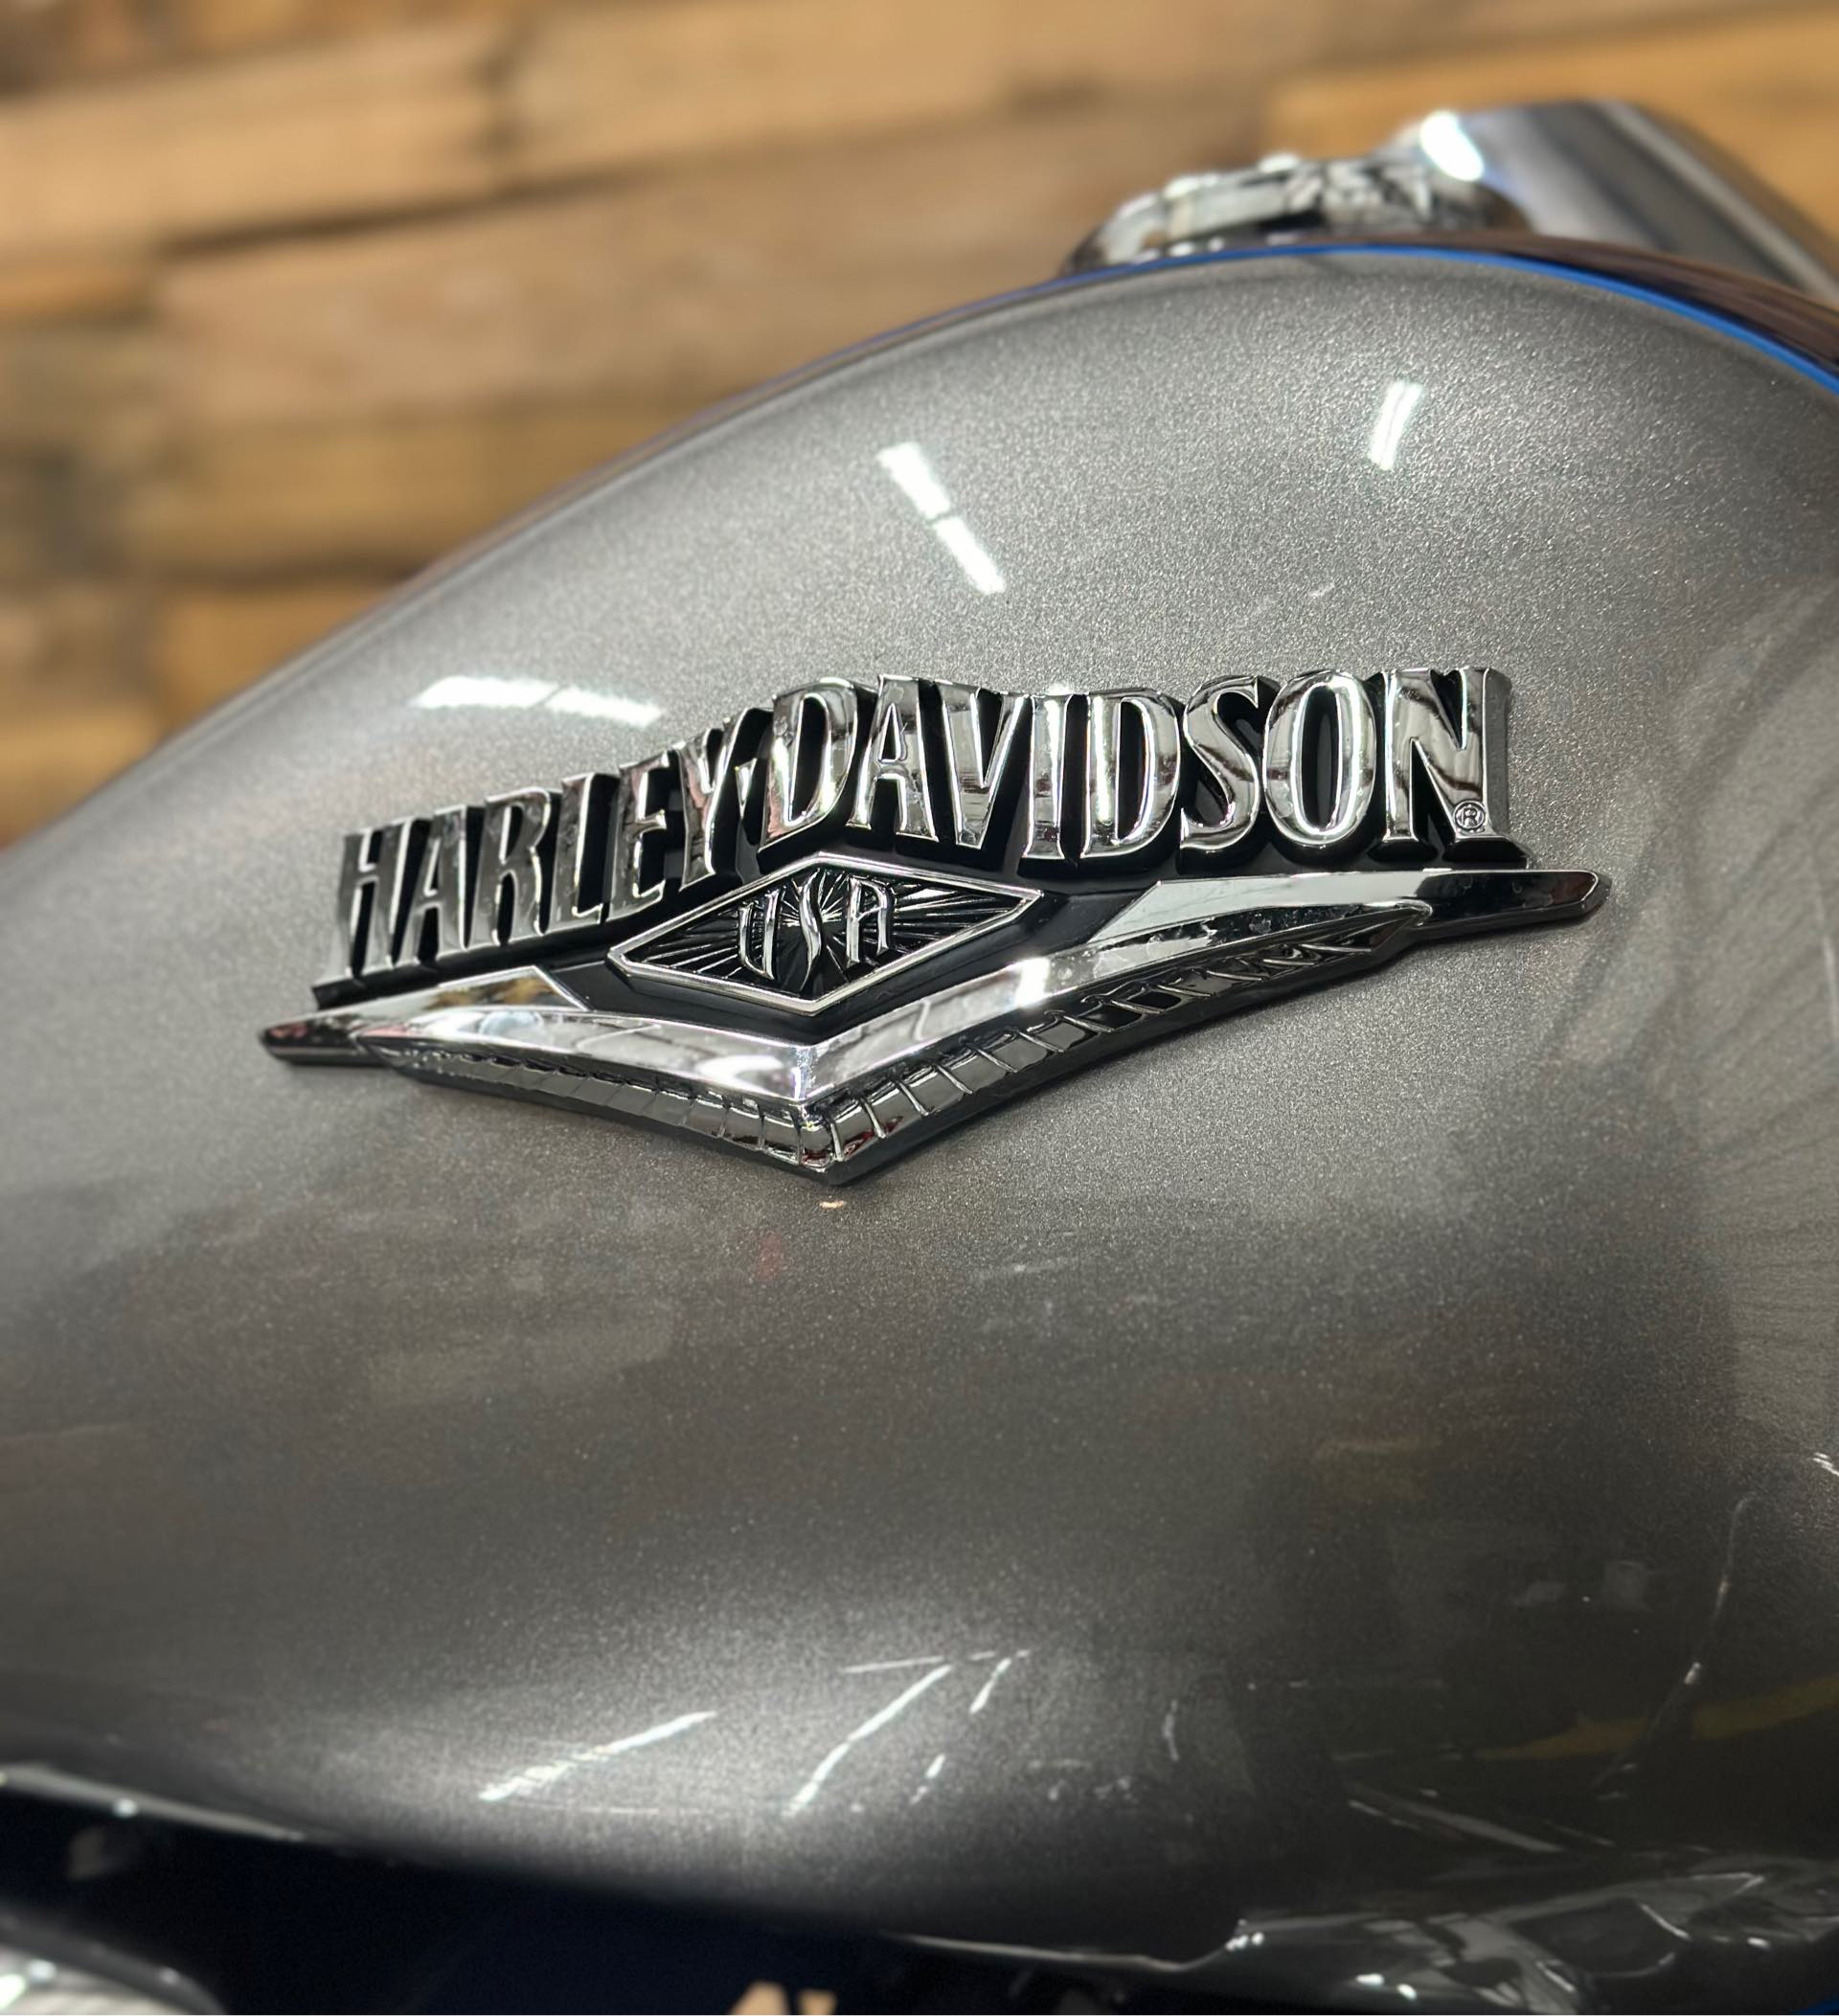 2017 Harley-Davidson Road King Base at Lumberjack Harley-Davidson